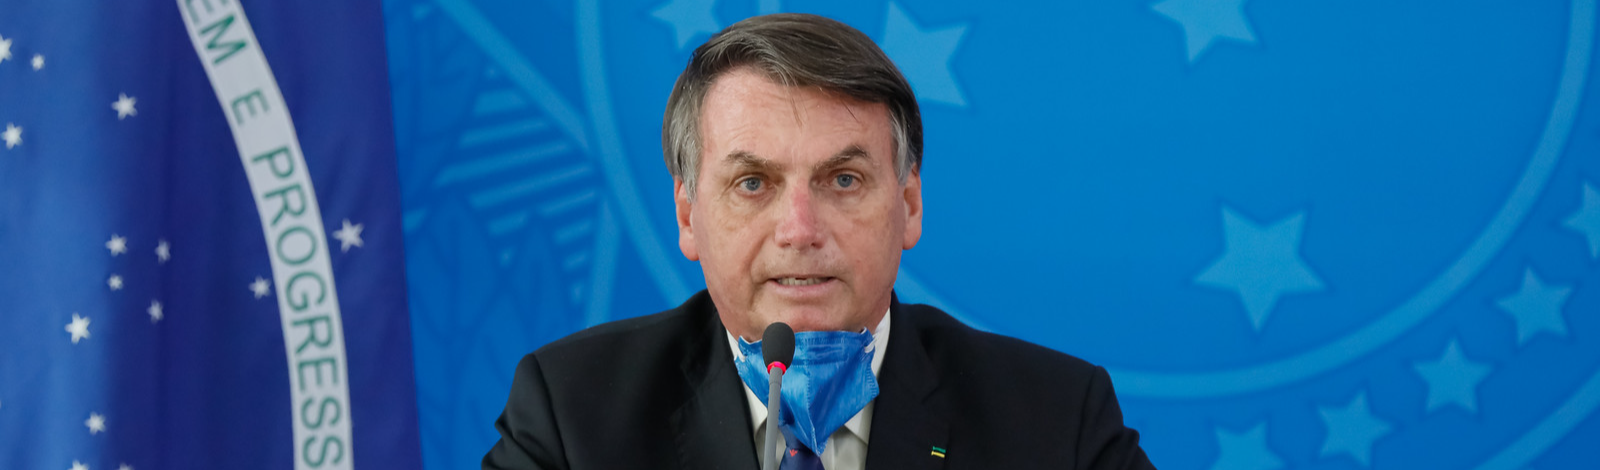 Entenda gravidade do corte de R$ 1 bilhão nas universidades decretado por Bolsonaro